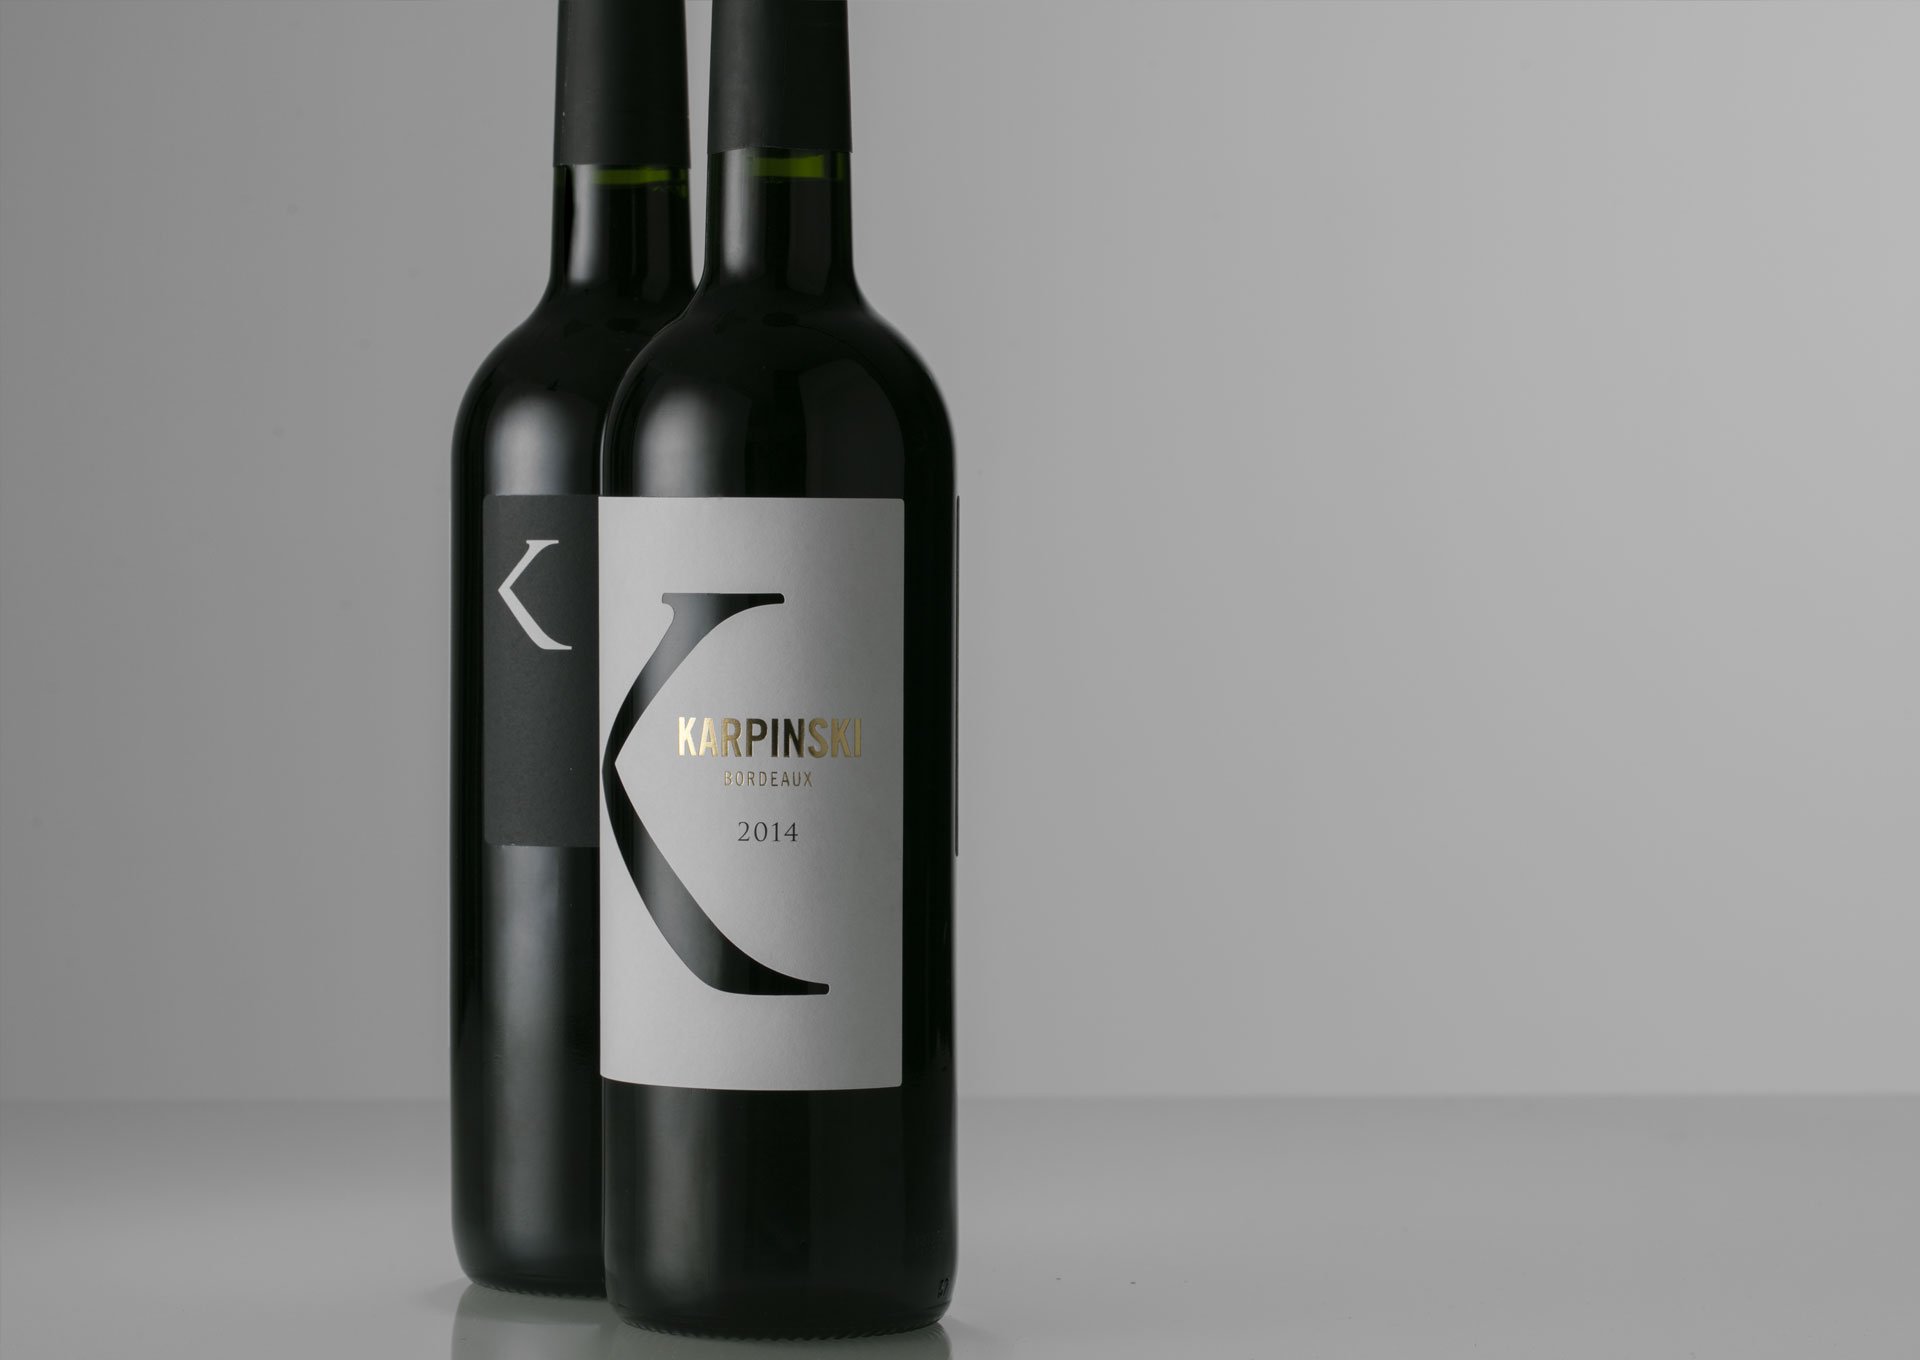  Karpinski Wine Atteret Design